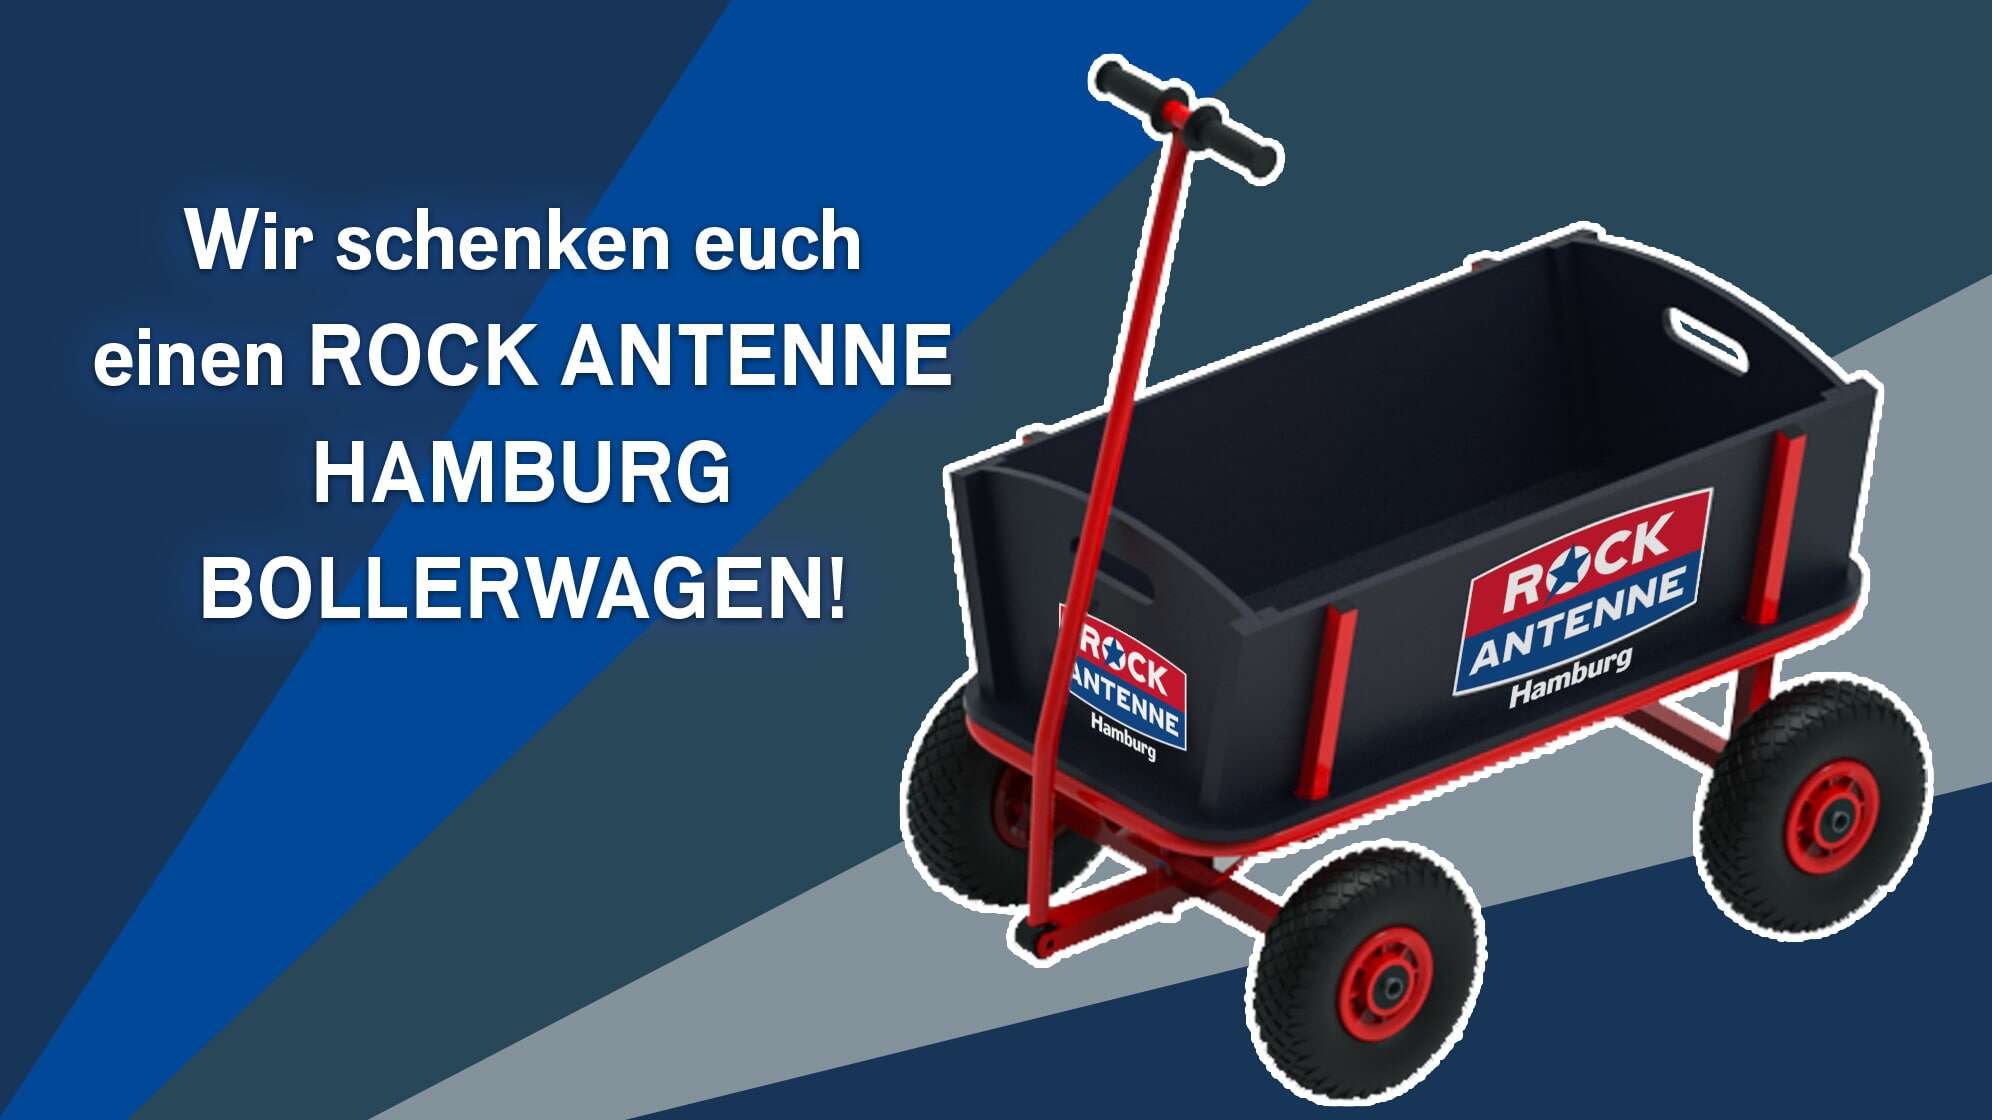 Bild des ROCK ANTENNE Hamburg Bollerwagens vor graphischem Hintergrund in verschiedenen Blautönen, dazu der Text Wir schenken euch einen ROCK ANTENNE Hamburg Bollerwagen!